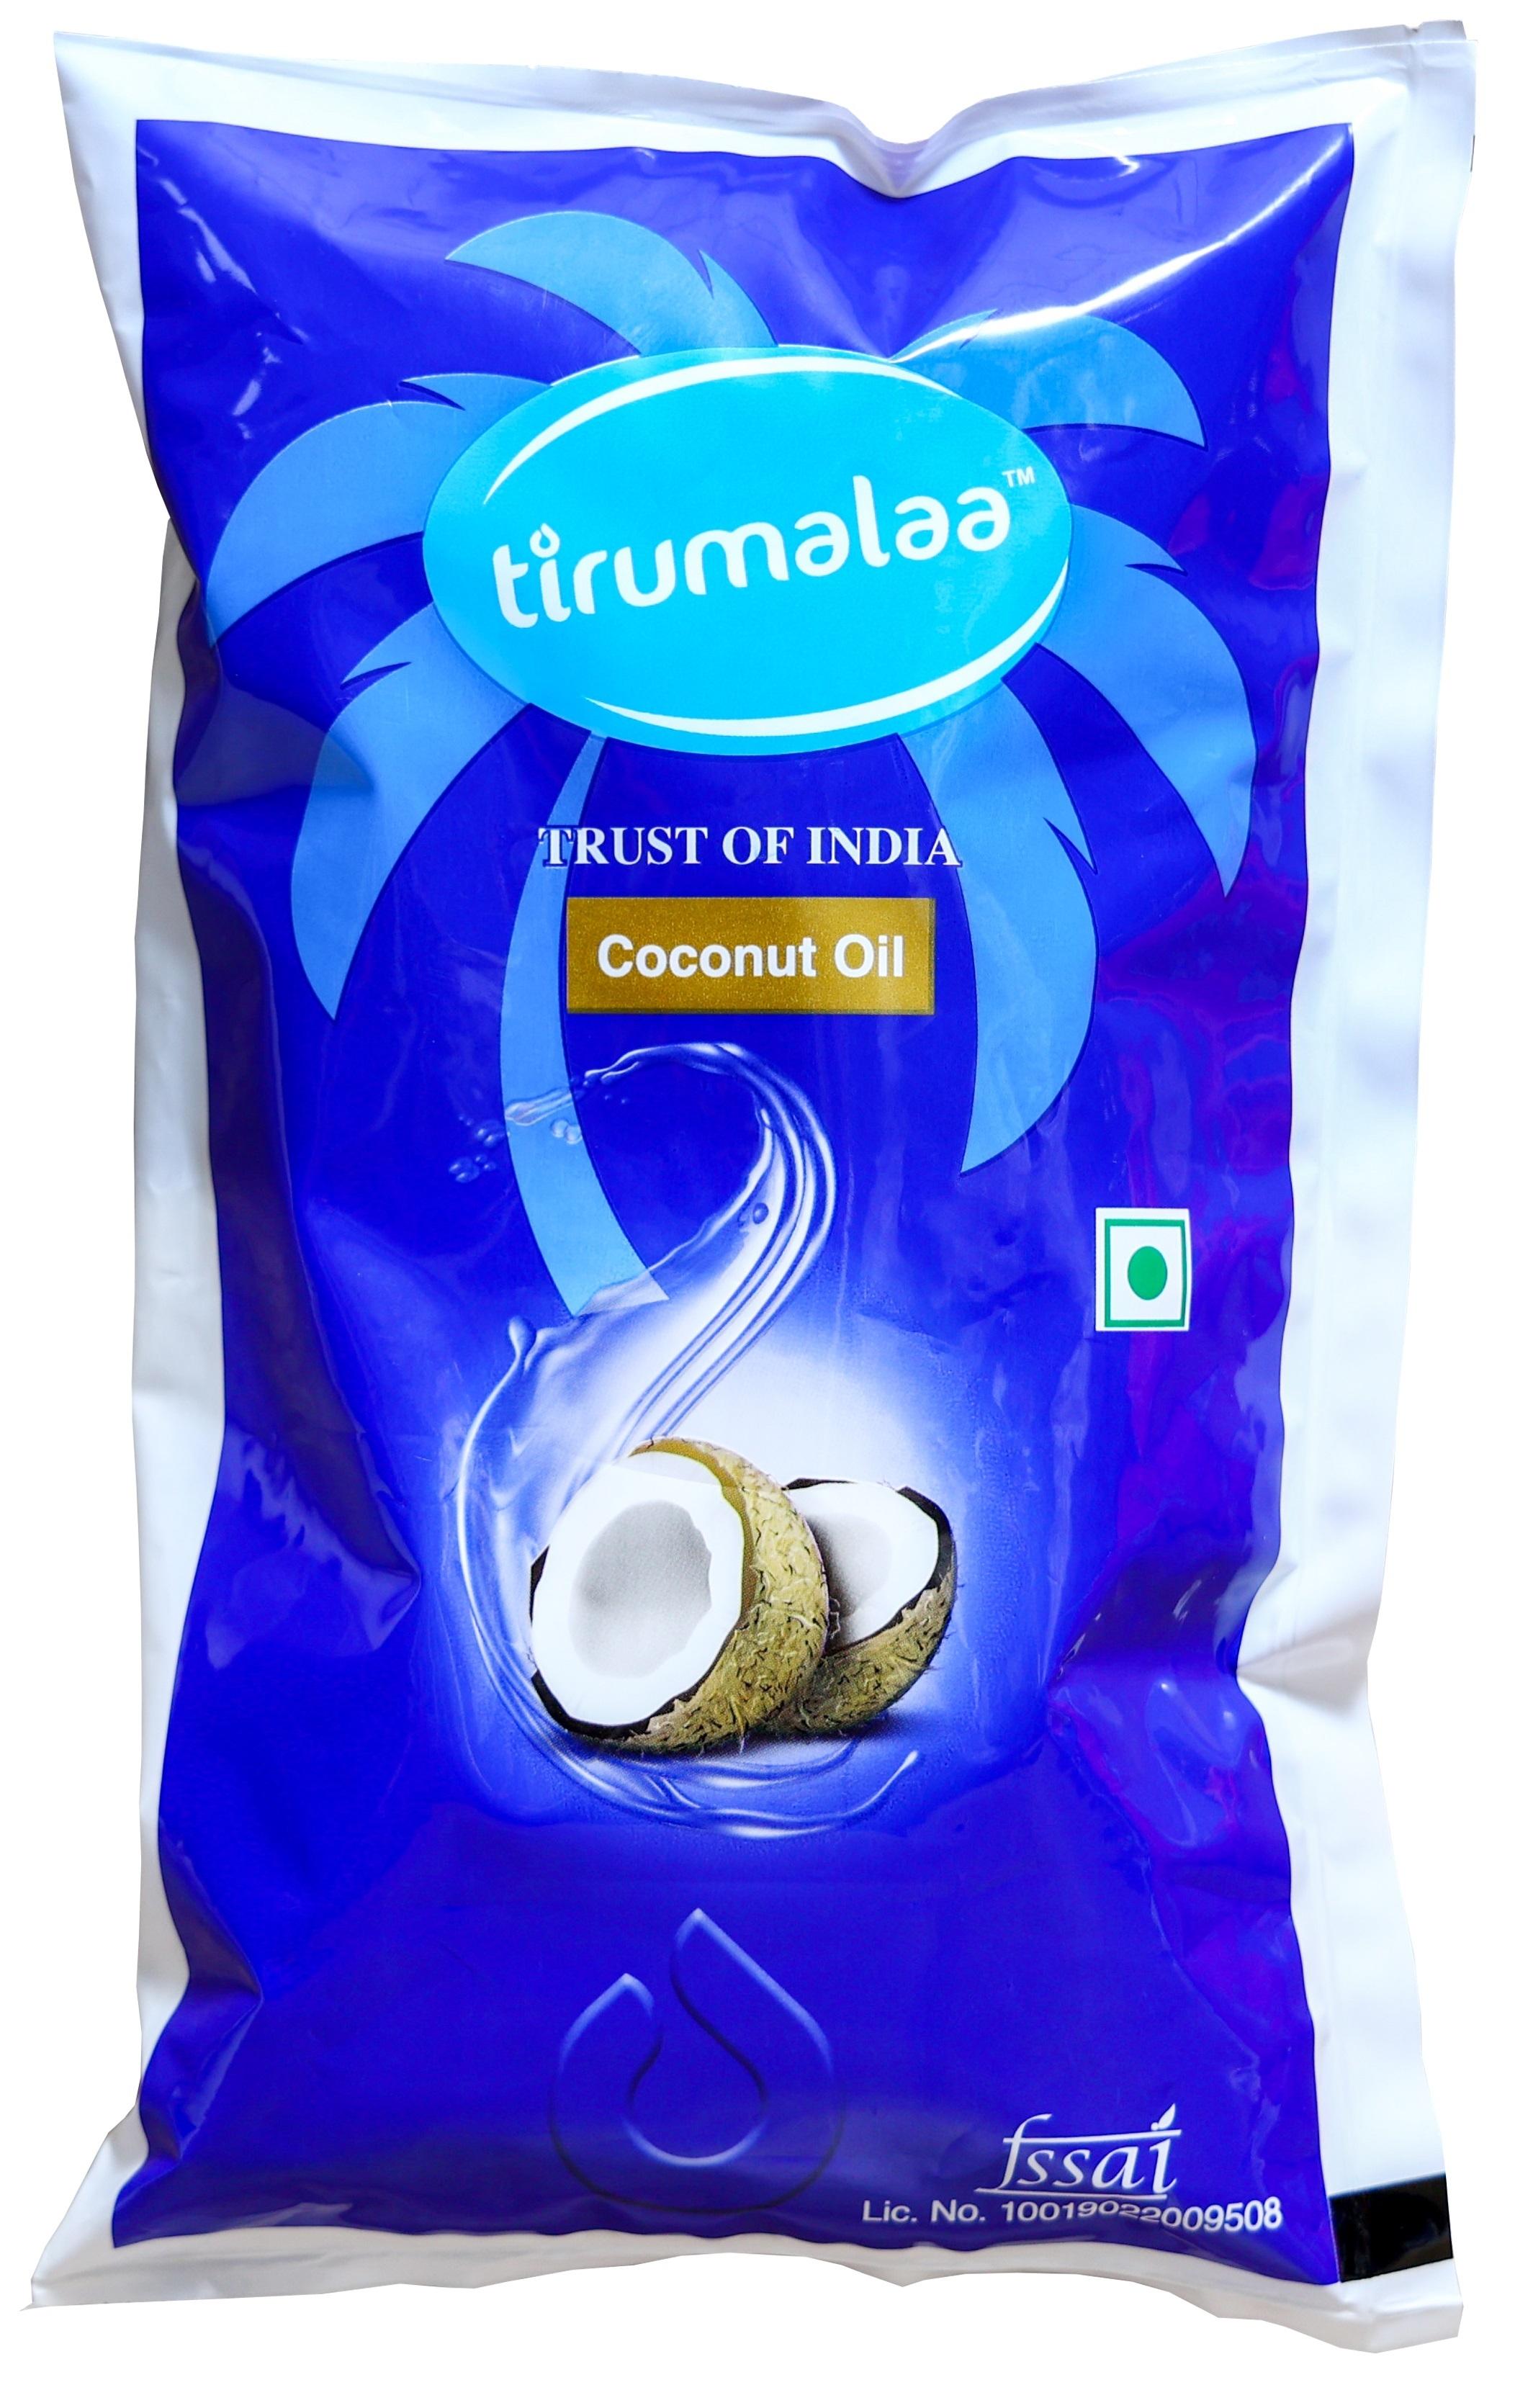 Tirumalaa Trust of India Coconut Oil 1 Liter Pouch - JioMart